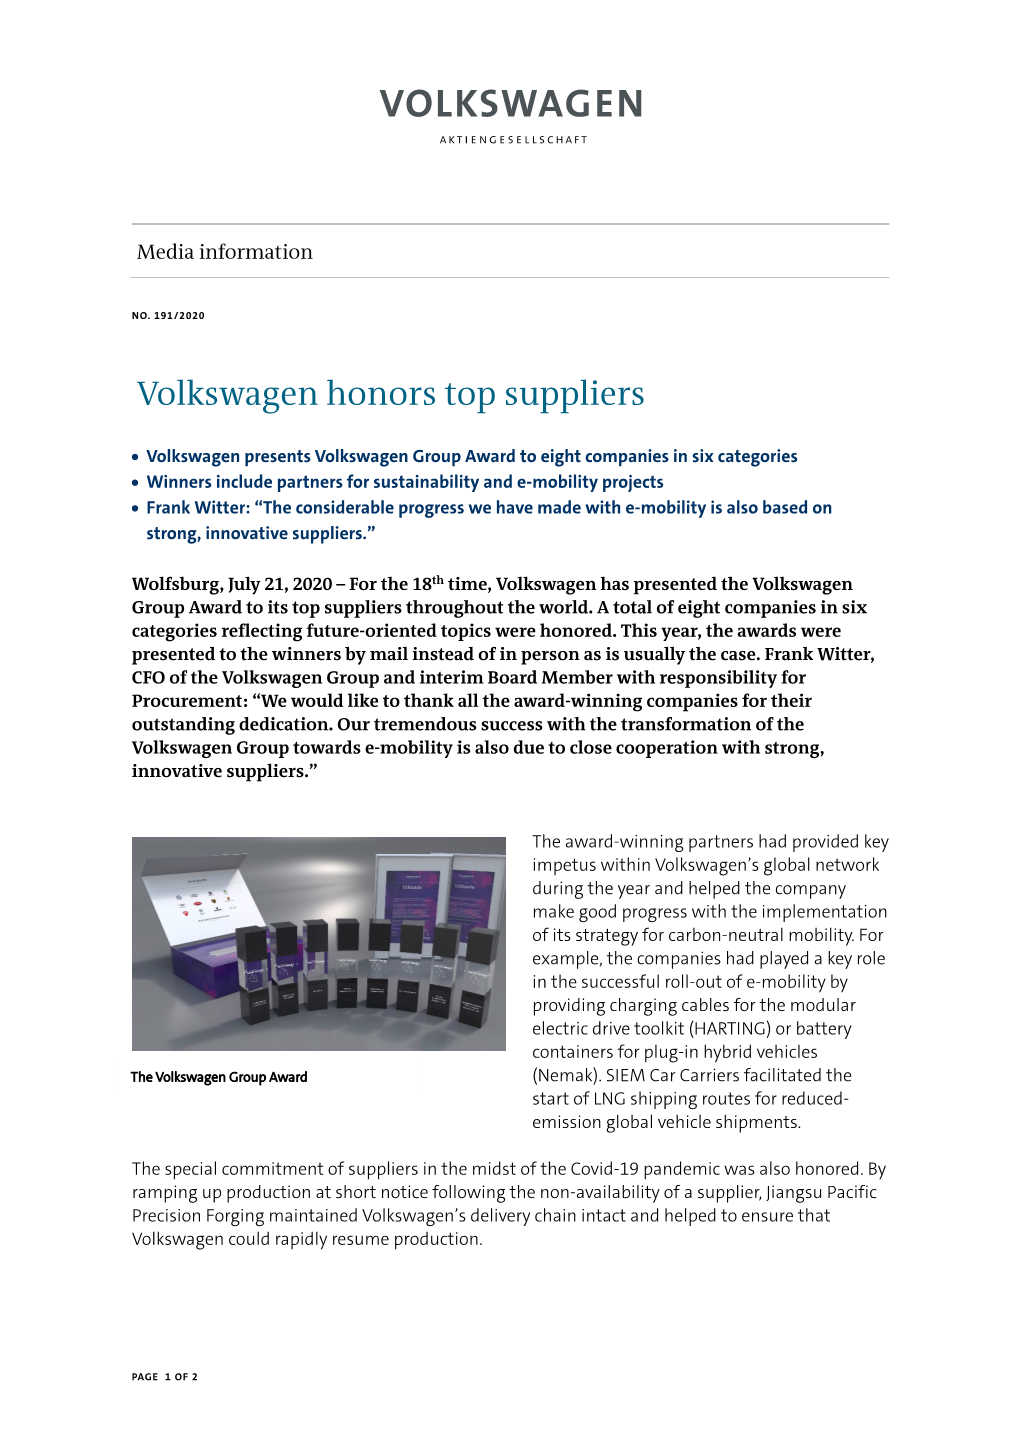 Volkswagen Honors Top Suppliers